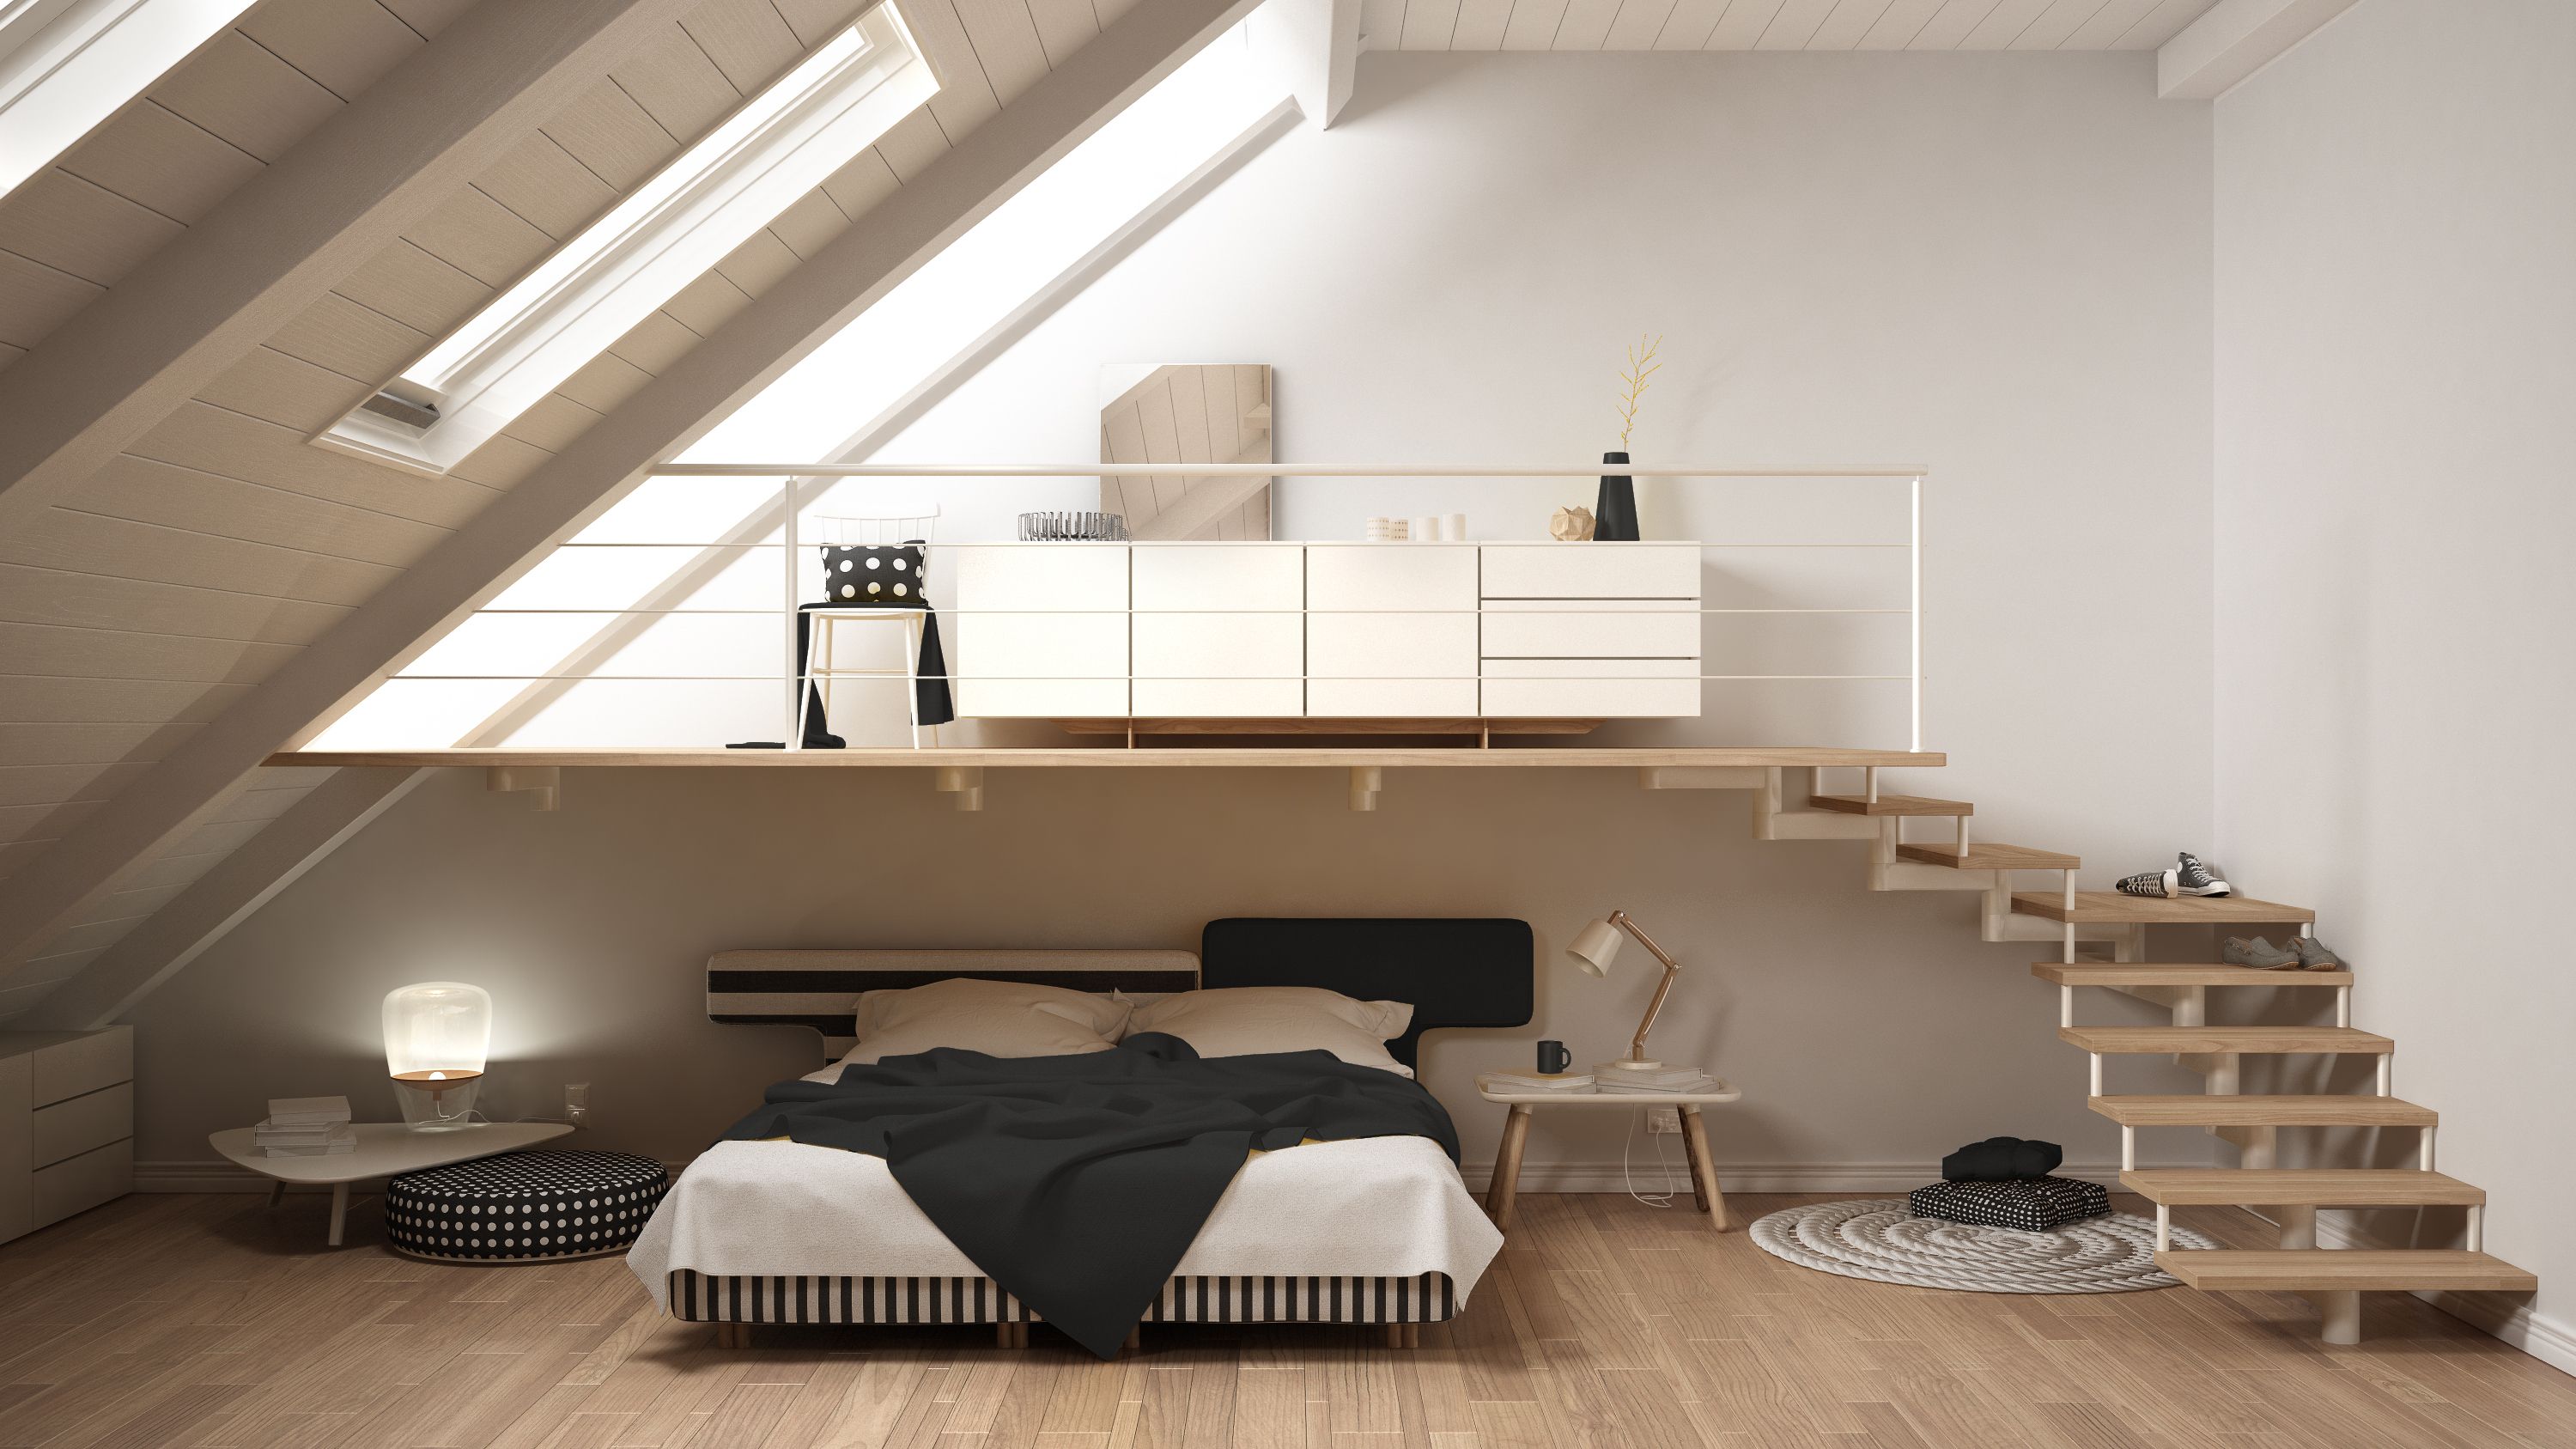 Entresuelo en un dormitorio - un interesante diseño del espacio